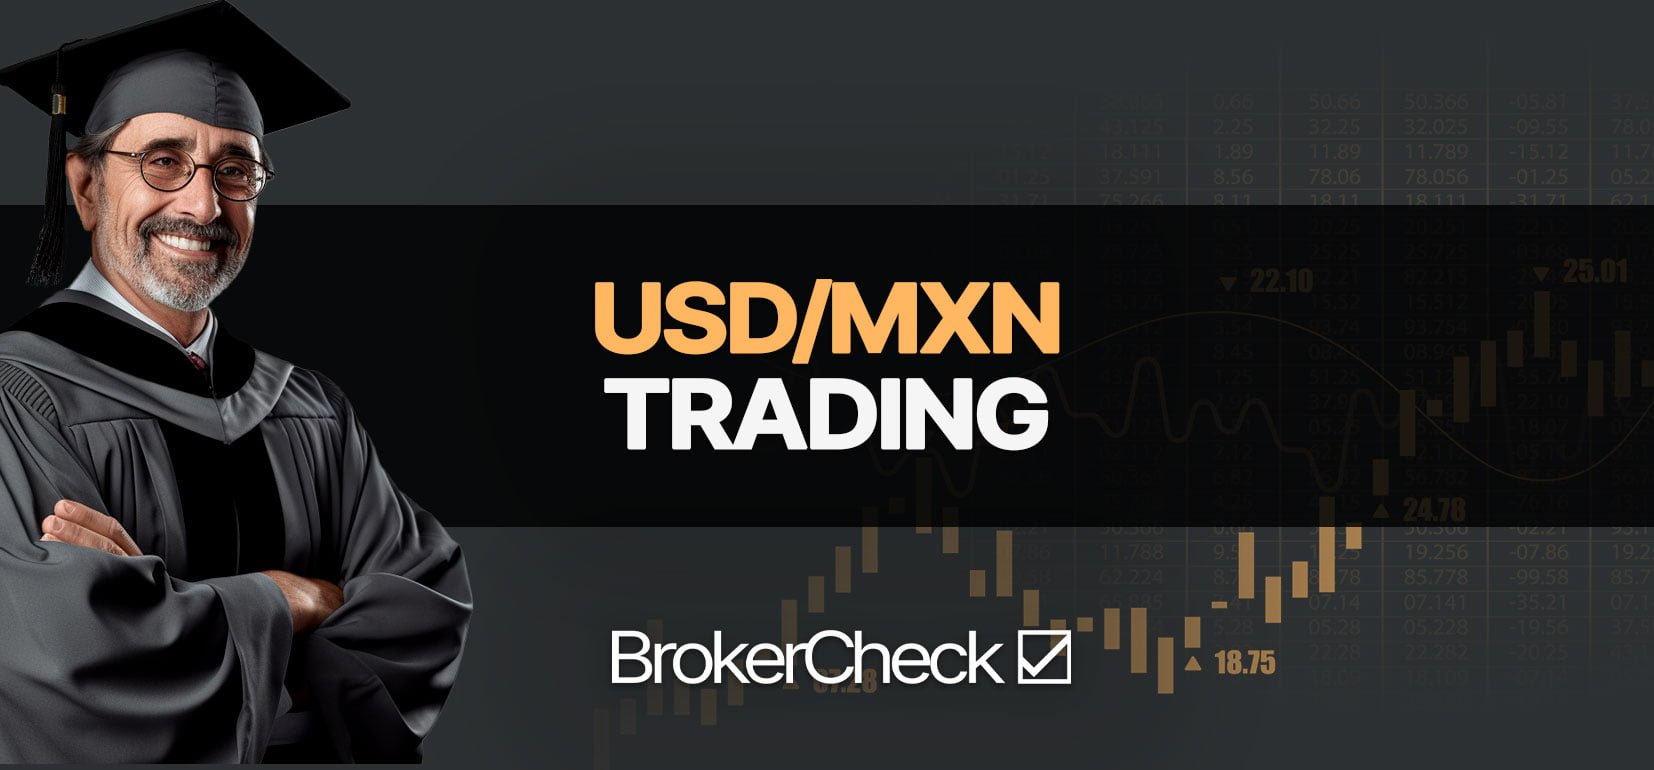 Jak Trade USD/MXN úspěšně